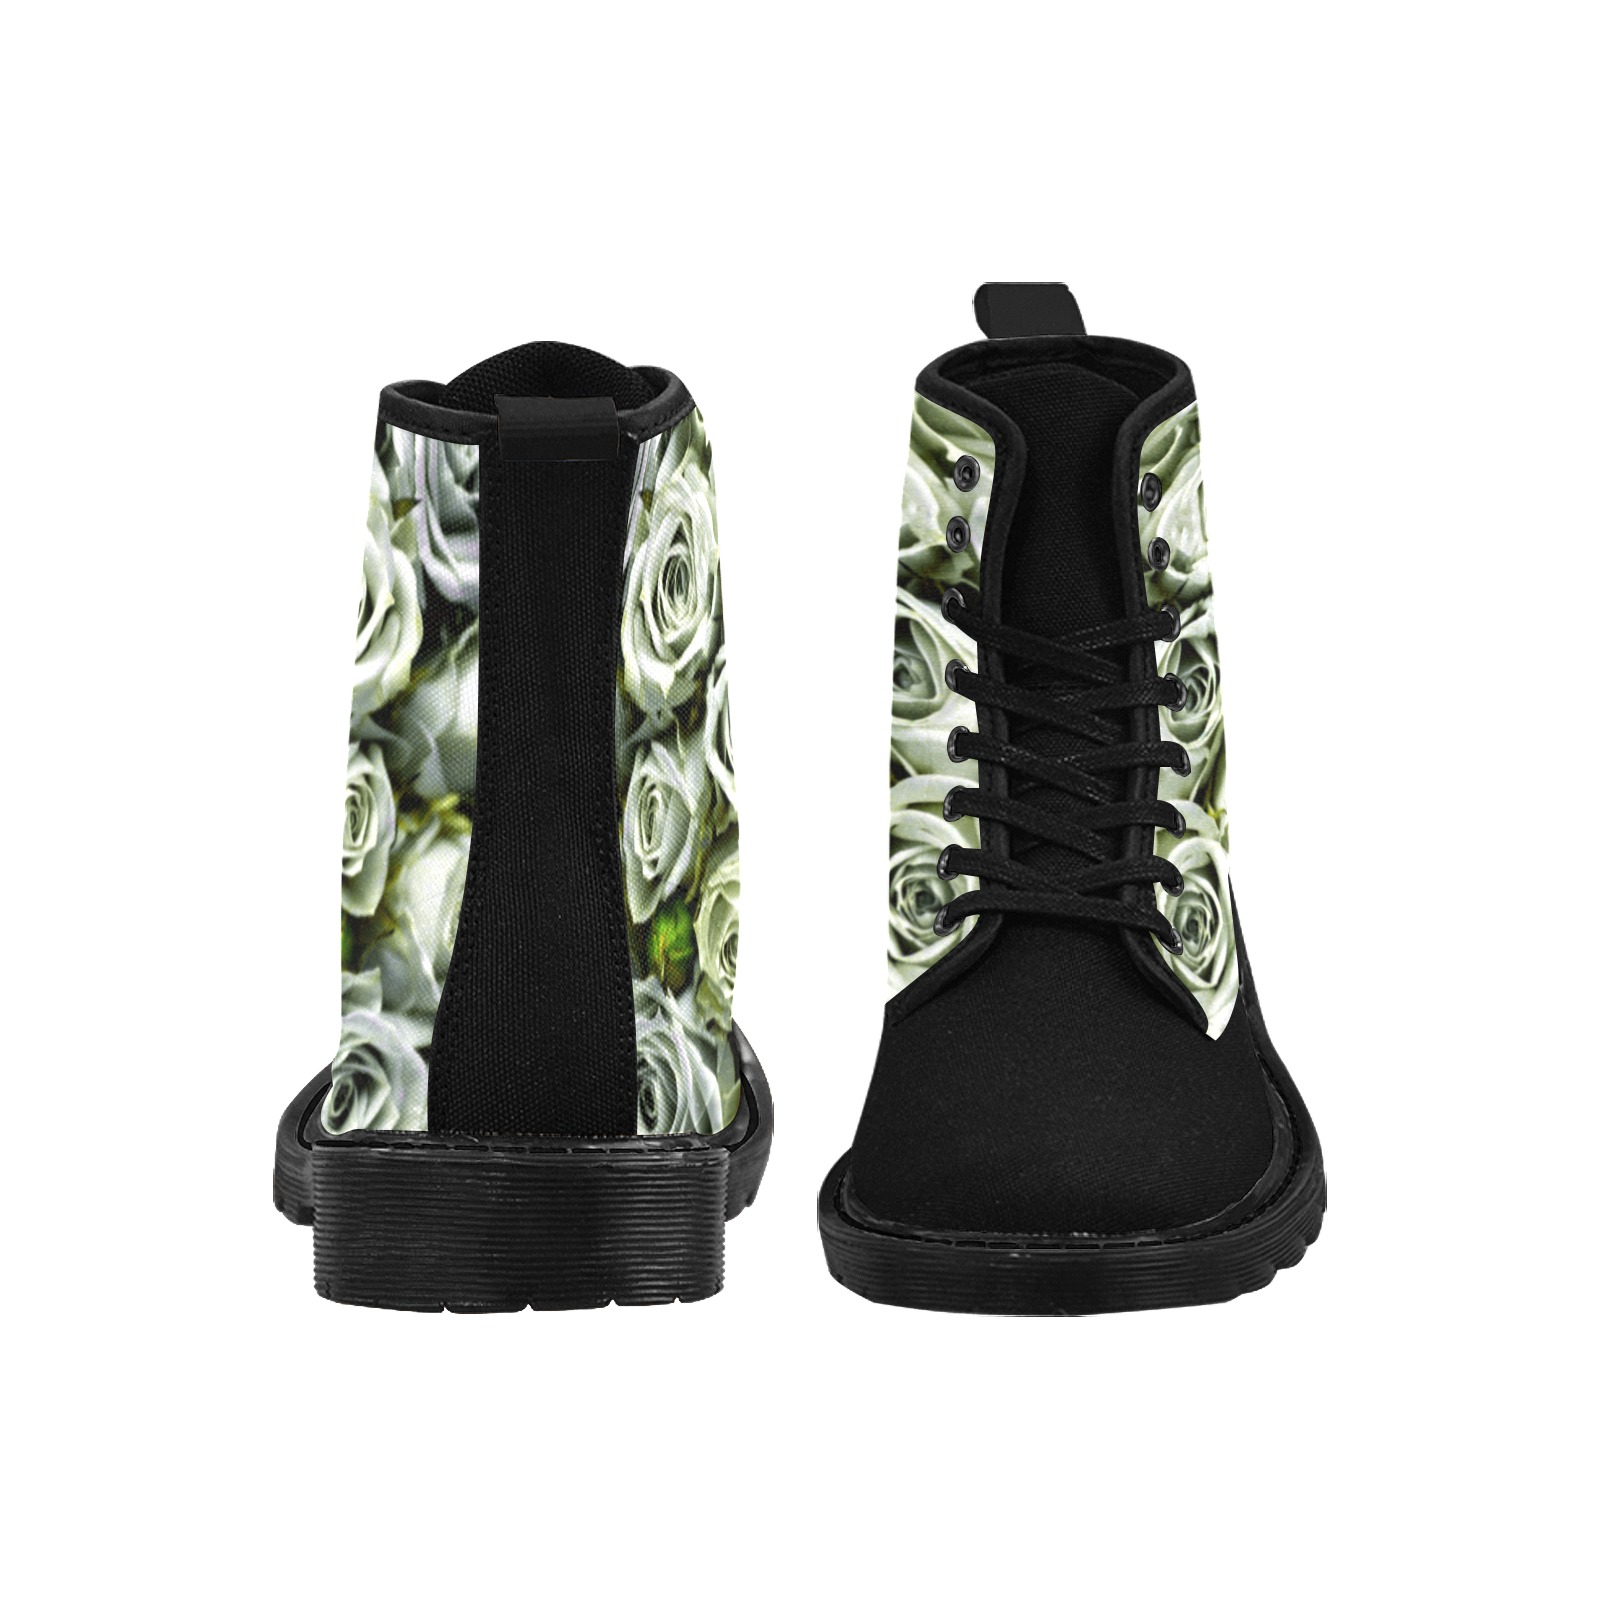 WHITE ROSE GARDEN - BLACK TOE Martin Boots for Women (Black) (Model 1203H)